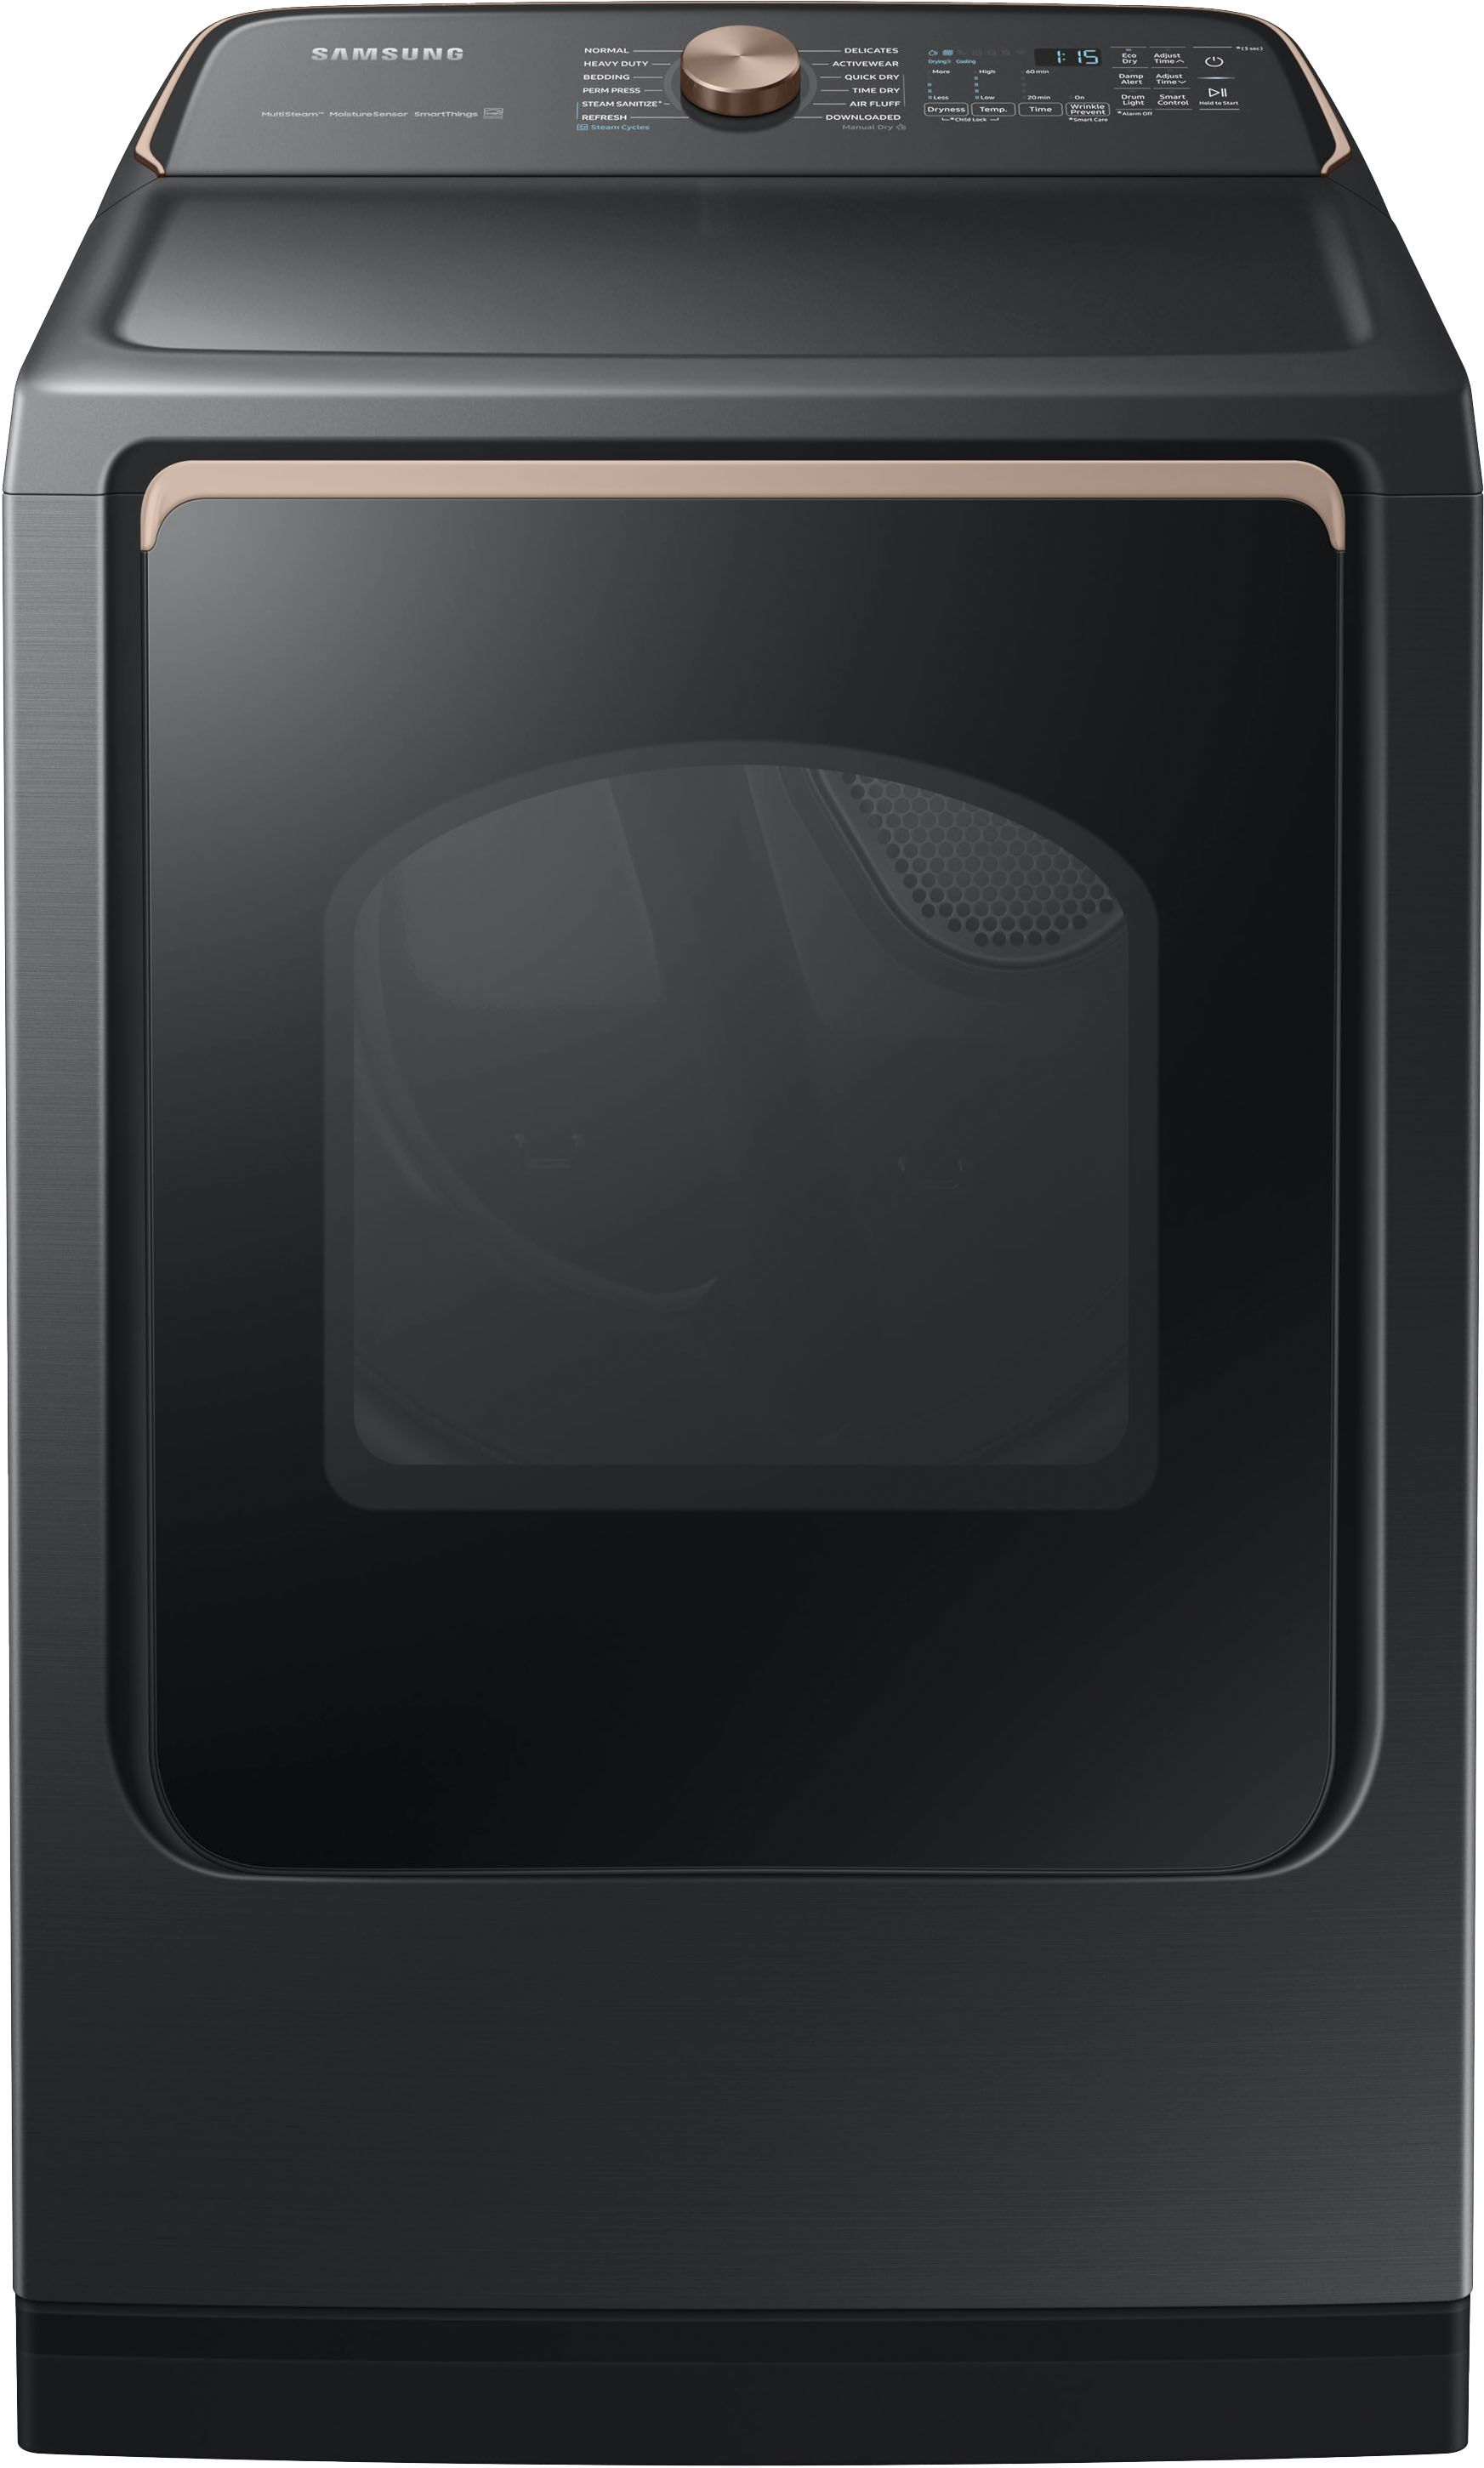 Samsung 7.4 Cu. Ft. Smart Electric Dryer with Steam Sanitize+ Brushed Black DVE55A7700V/A3 - Best... | Best Buy U.S.